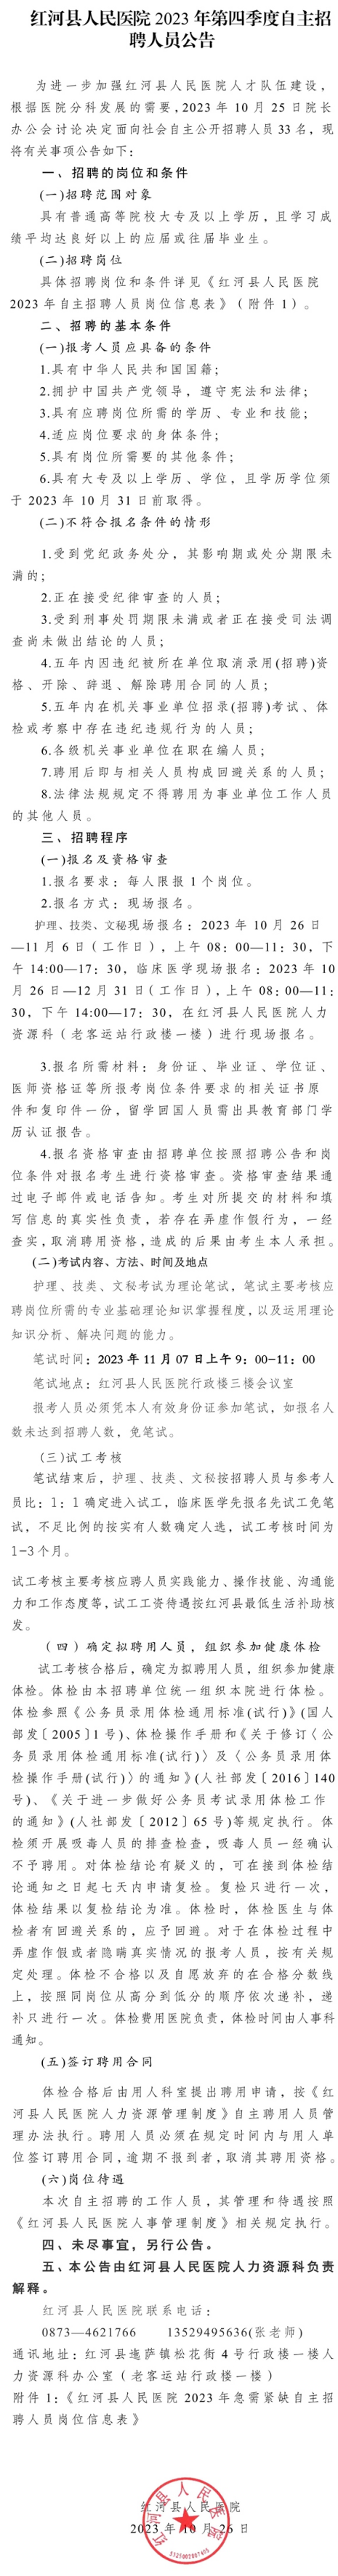 红河县人民医院 2023 年第四季度自主招聘人员公告 - 红河县人民医院.png